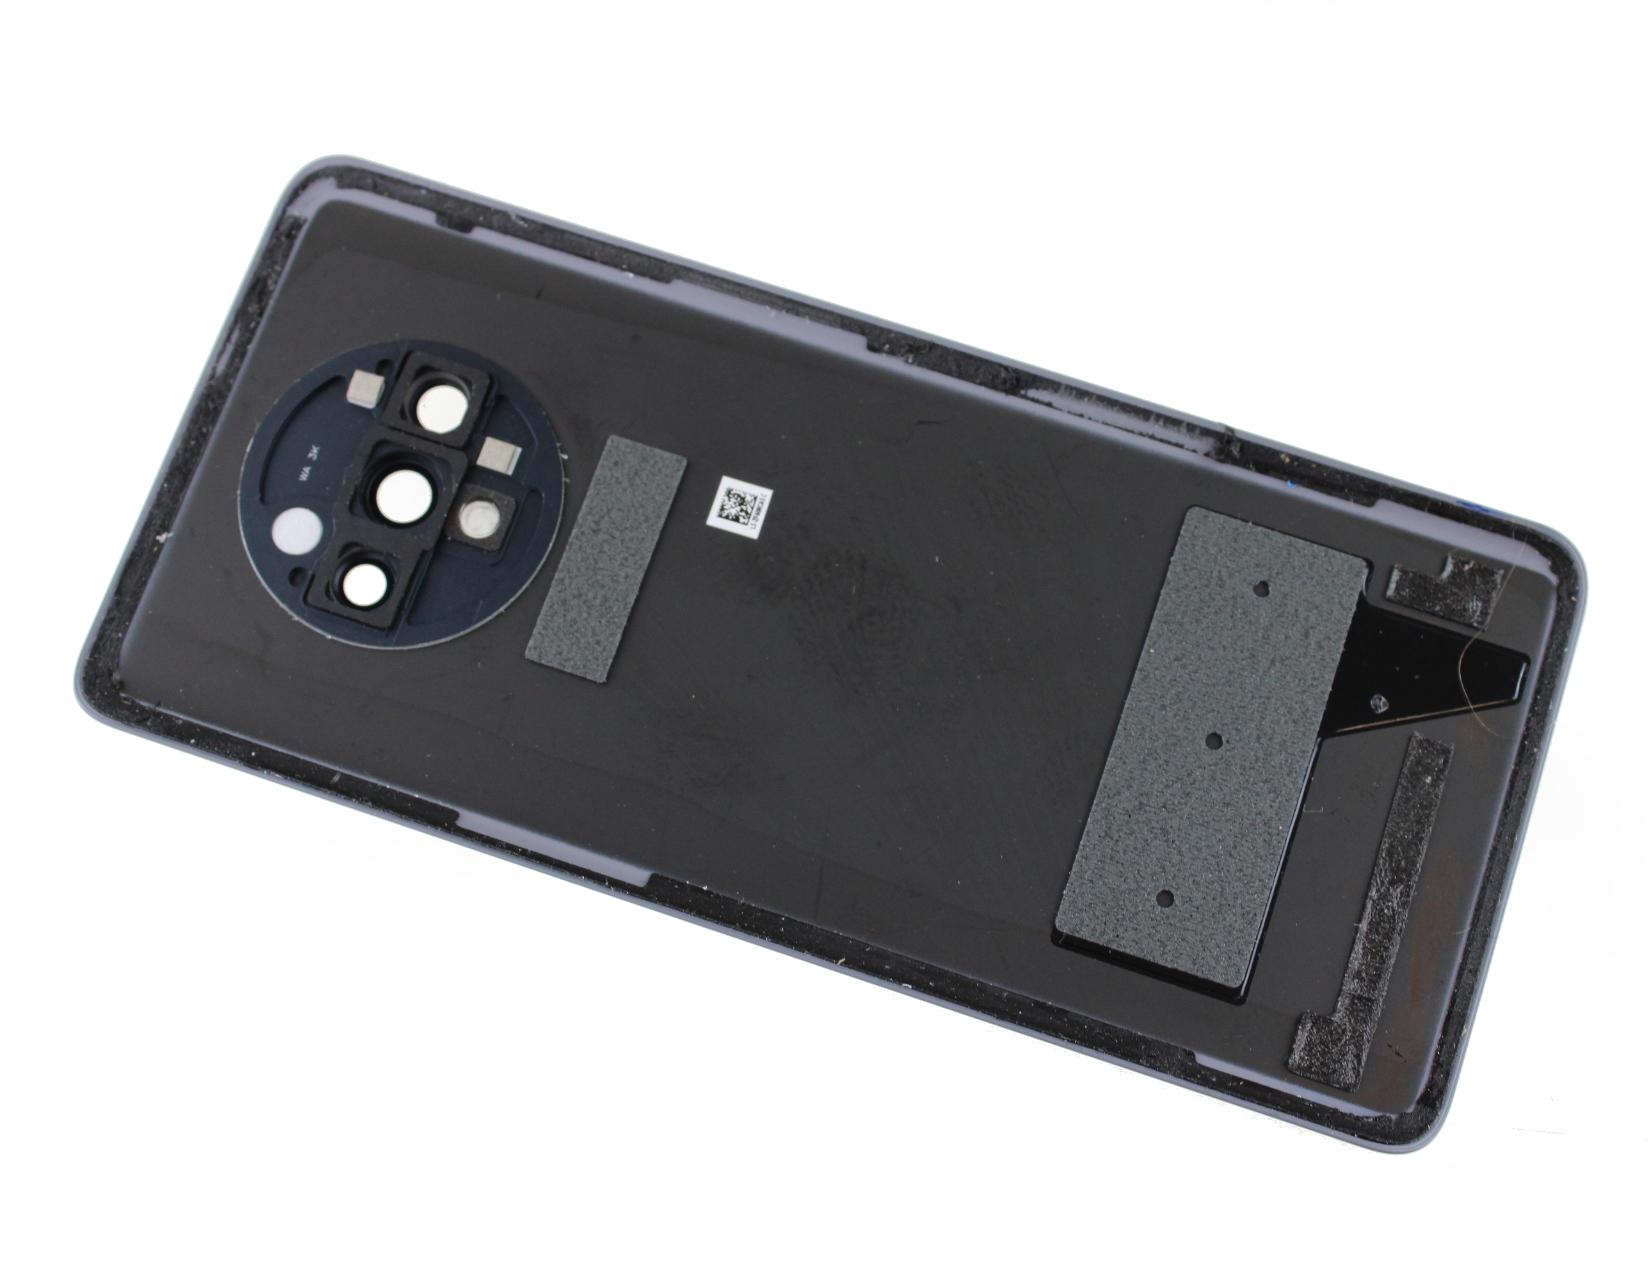 Originál kryt baterie OnePlus 7T HD1903 stříbrný - demontovaný díl